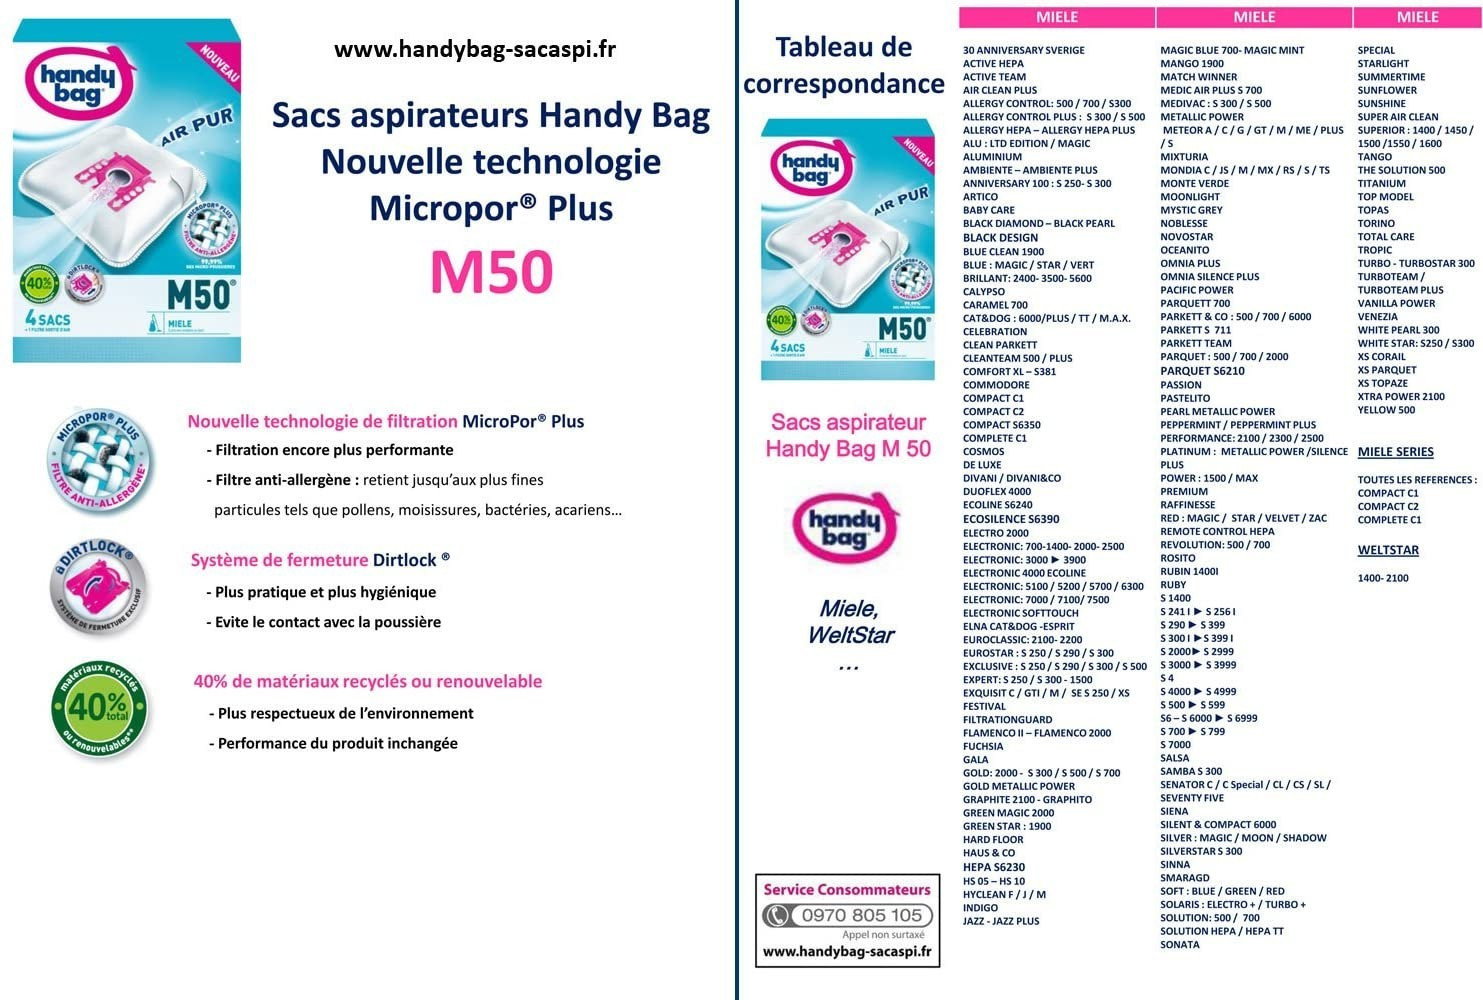 Melitta Handy Bag - M50-4 Sacs Aspirateurs, pour Aspirateurs Miele,  Fermeture Hermétique, Filtre Anti-Allergène, Filtre Moteur : :  Cuisine et maison